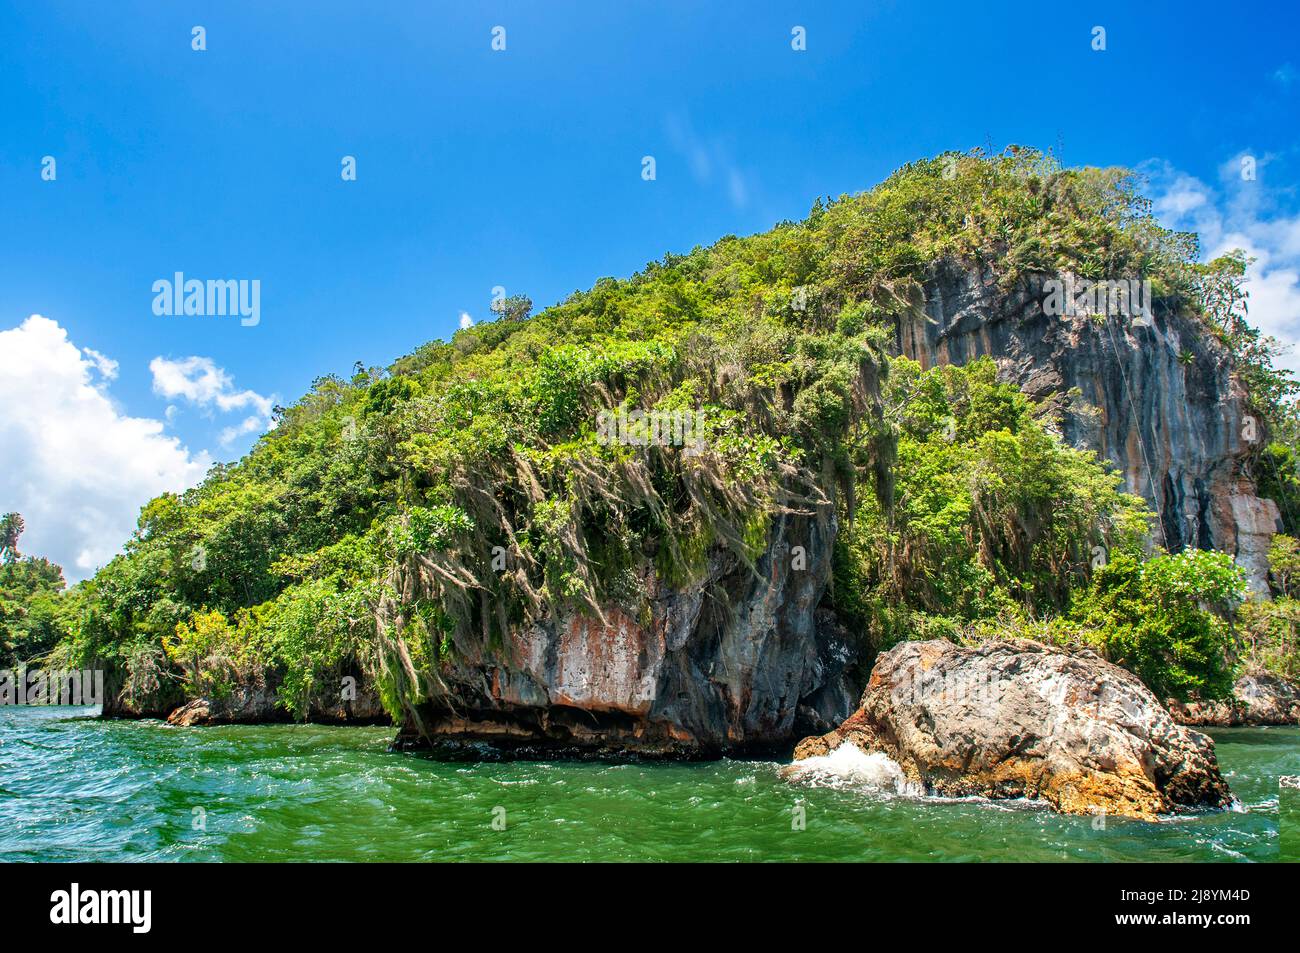 Rainforest, Mangroves. Ecotourism. Los Haitises National Park, Sabana de La Mar, Dominican Republic.  Los Haitises National Park is a national park lo Stock Photo